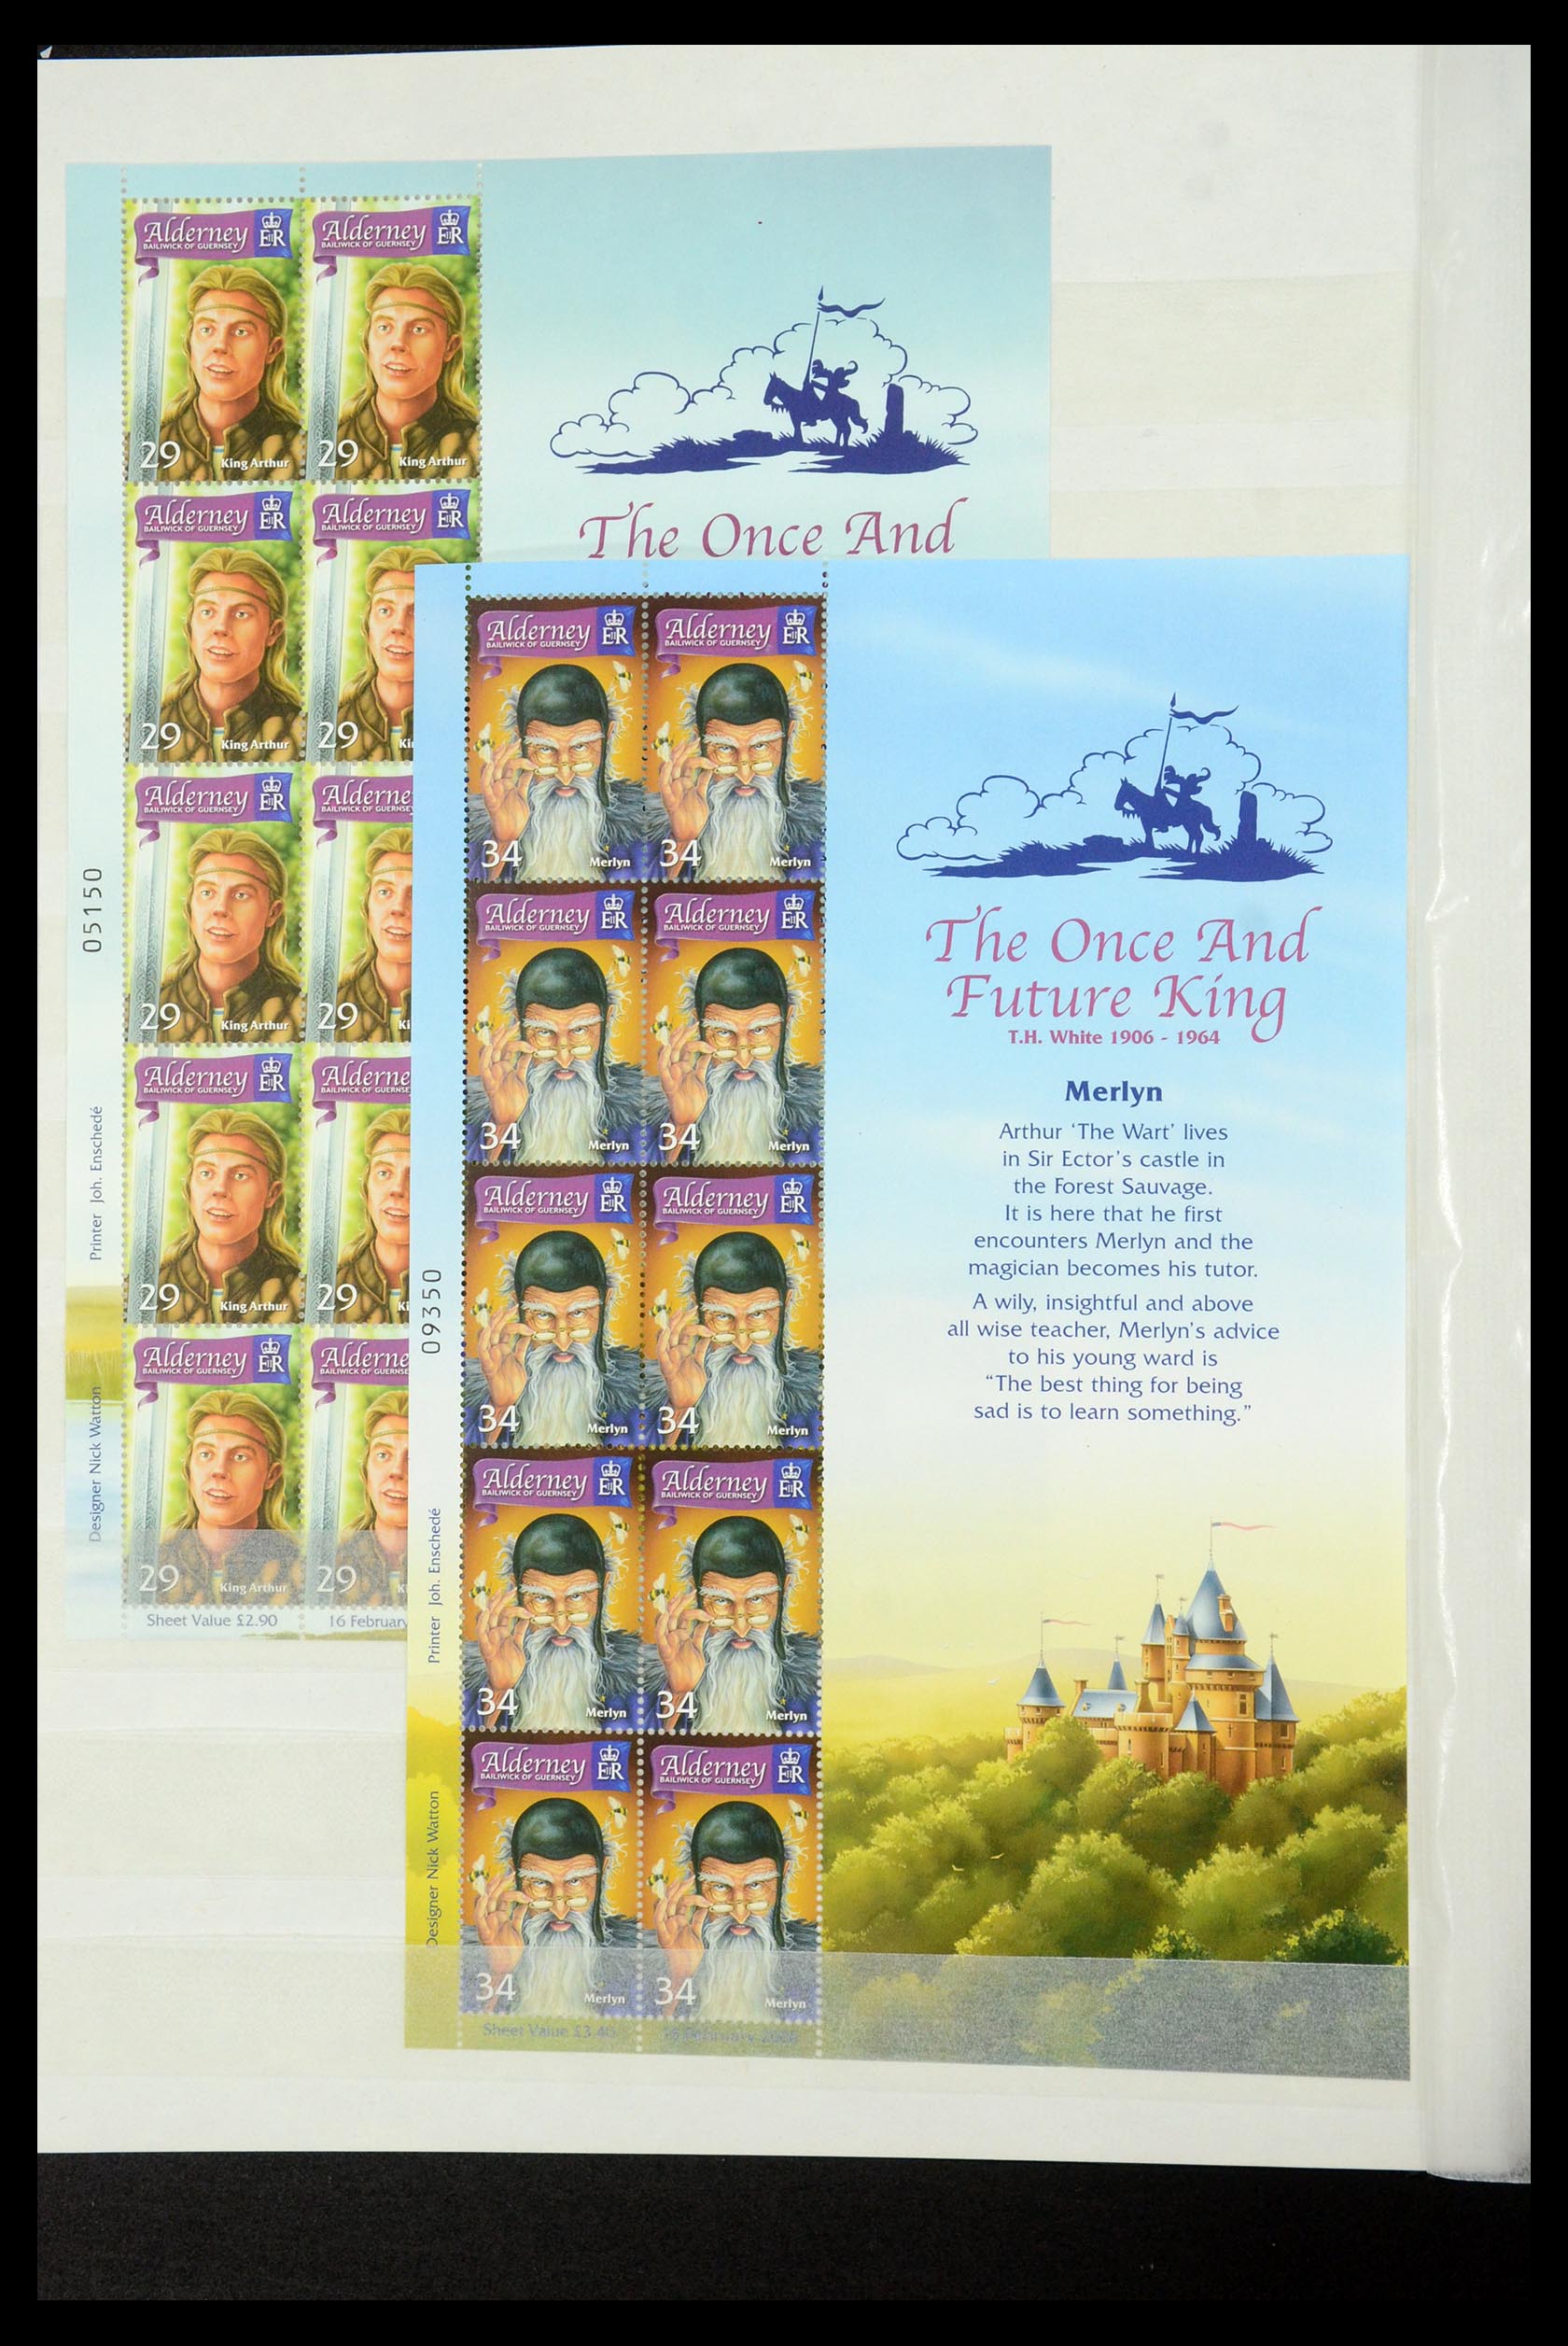 35529 152 - Stamp Collection 35529 Alderney1983-2014!